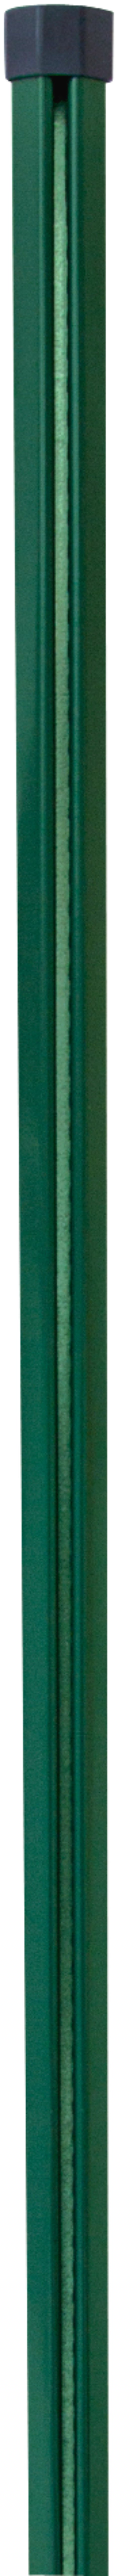 H+S Zwischensäule für Dübelplatte grün 0,8 m